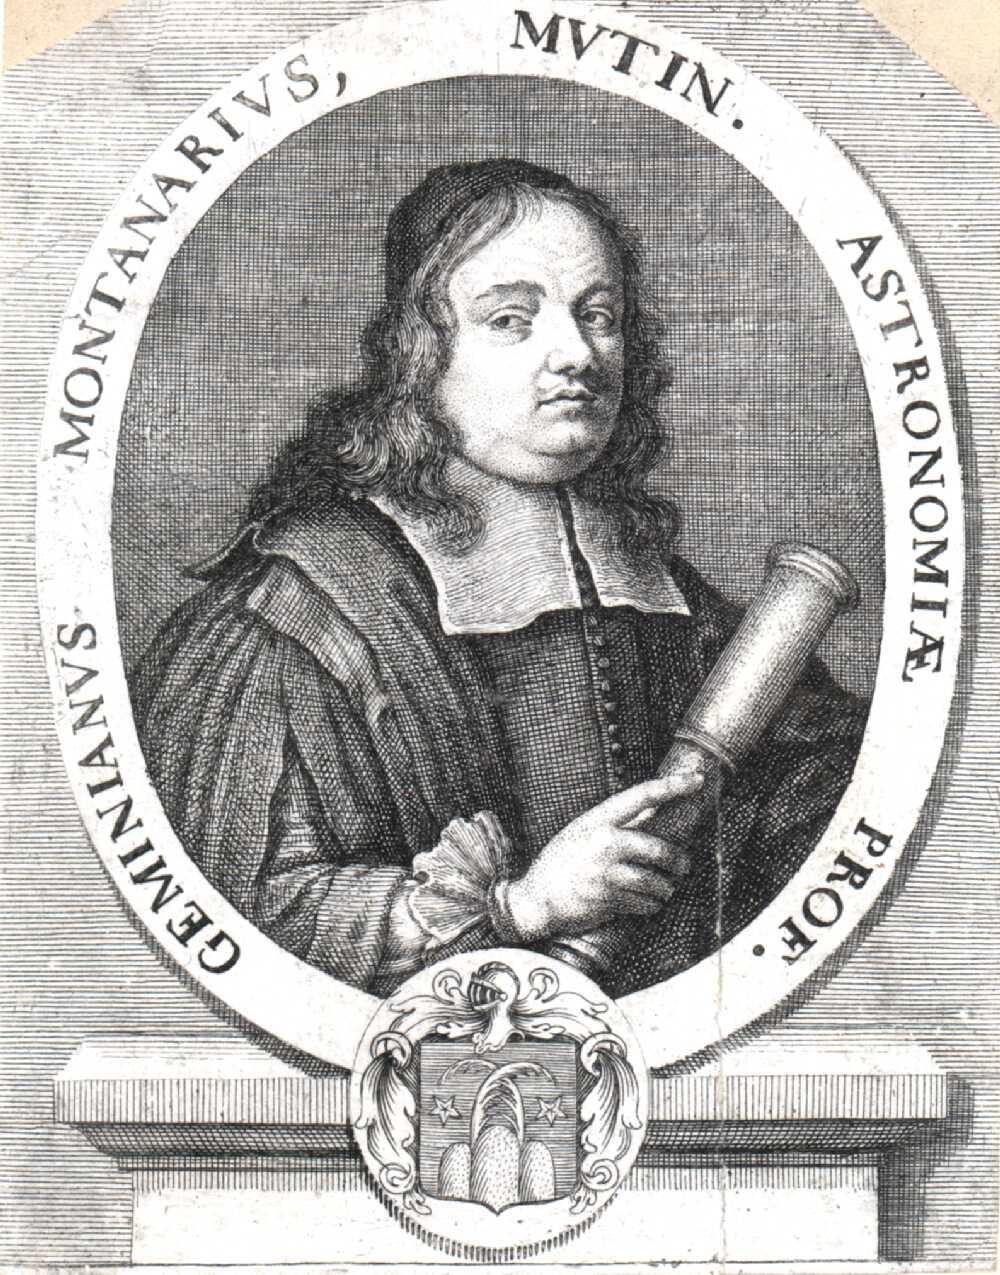 periodisesti muuttuvan tähden: Mira 1638: Johannes Holwarda (Friisiläinen, 1618 1651) Ilmestyy ja katoaa 11 kuukaudessa Muuttuva tähti: laajenee ja